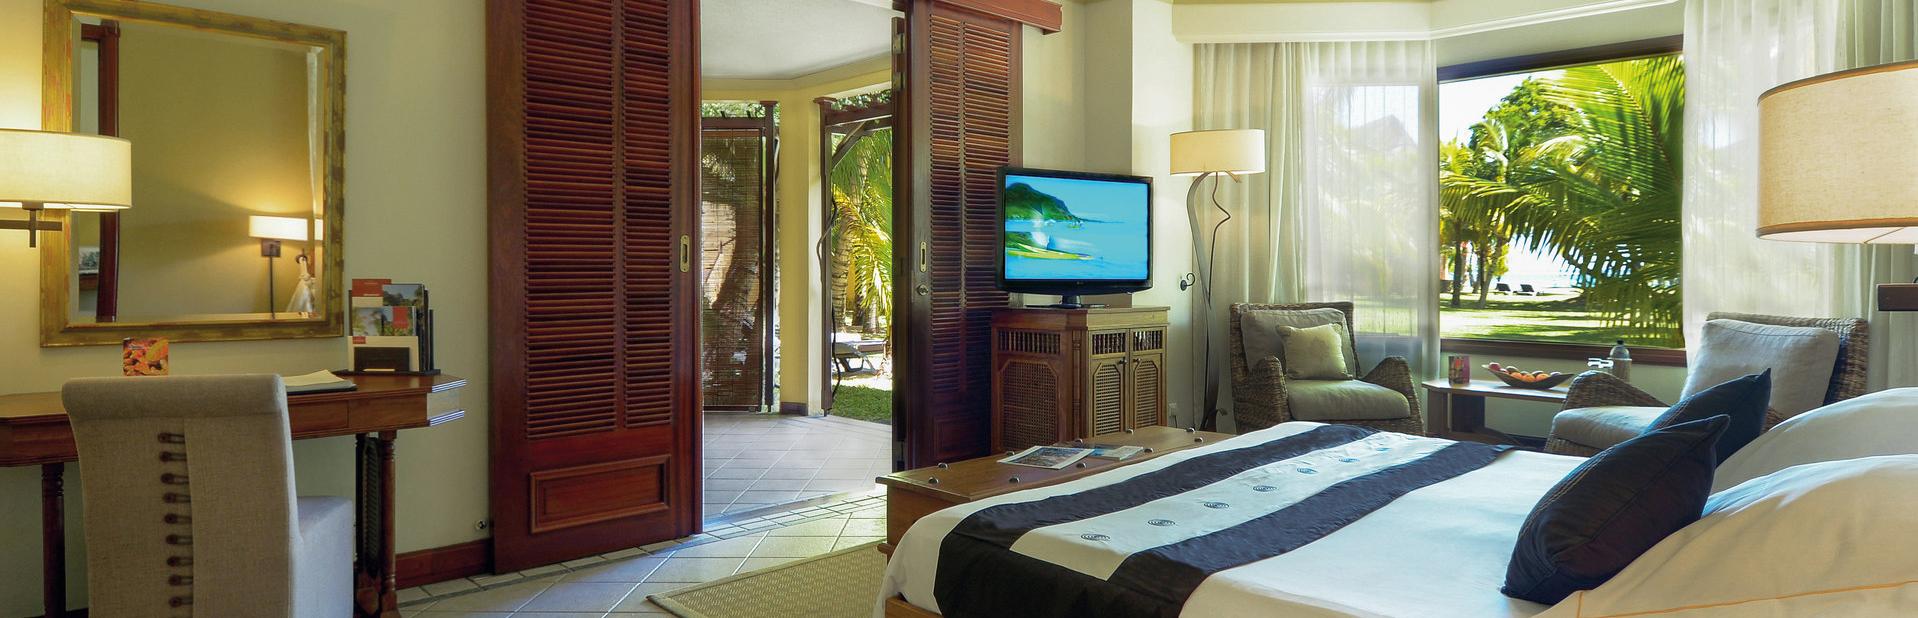 Отель Dinarobin Beachcomber Golf Resort & Spa на Маврикии